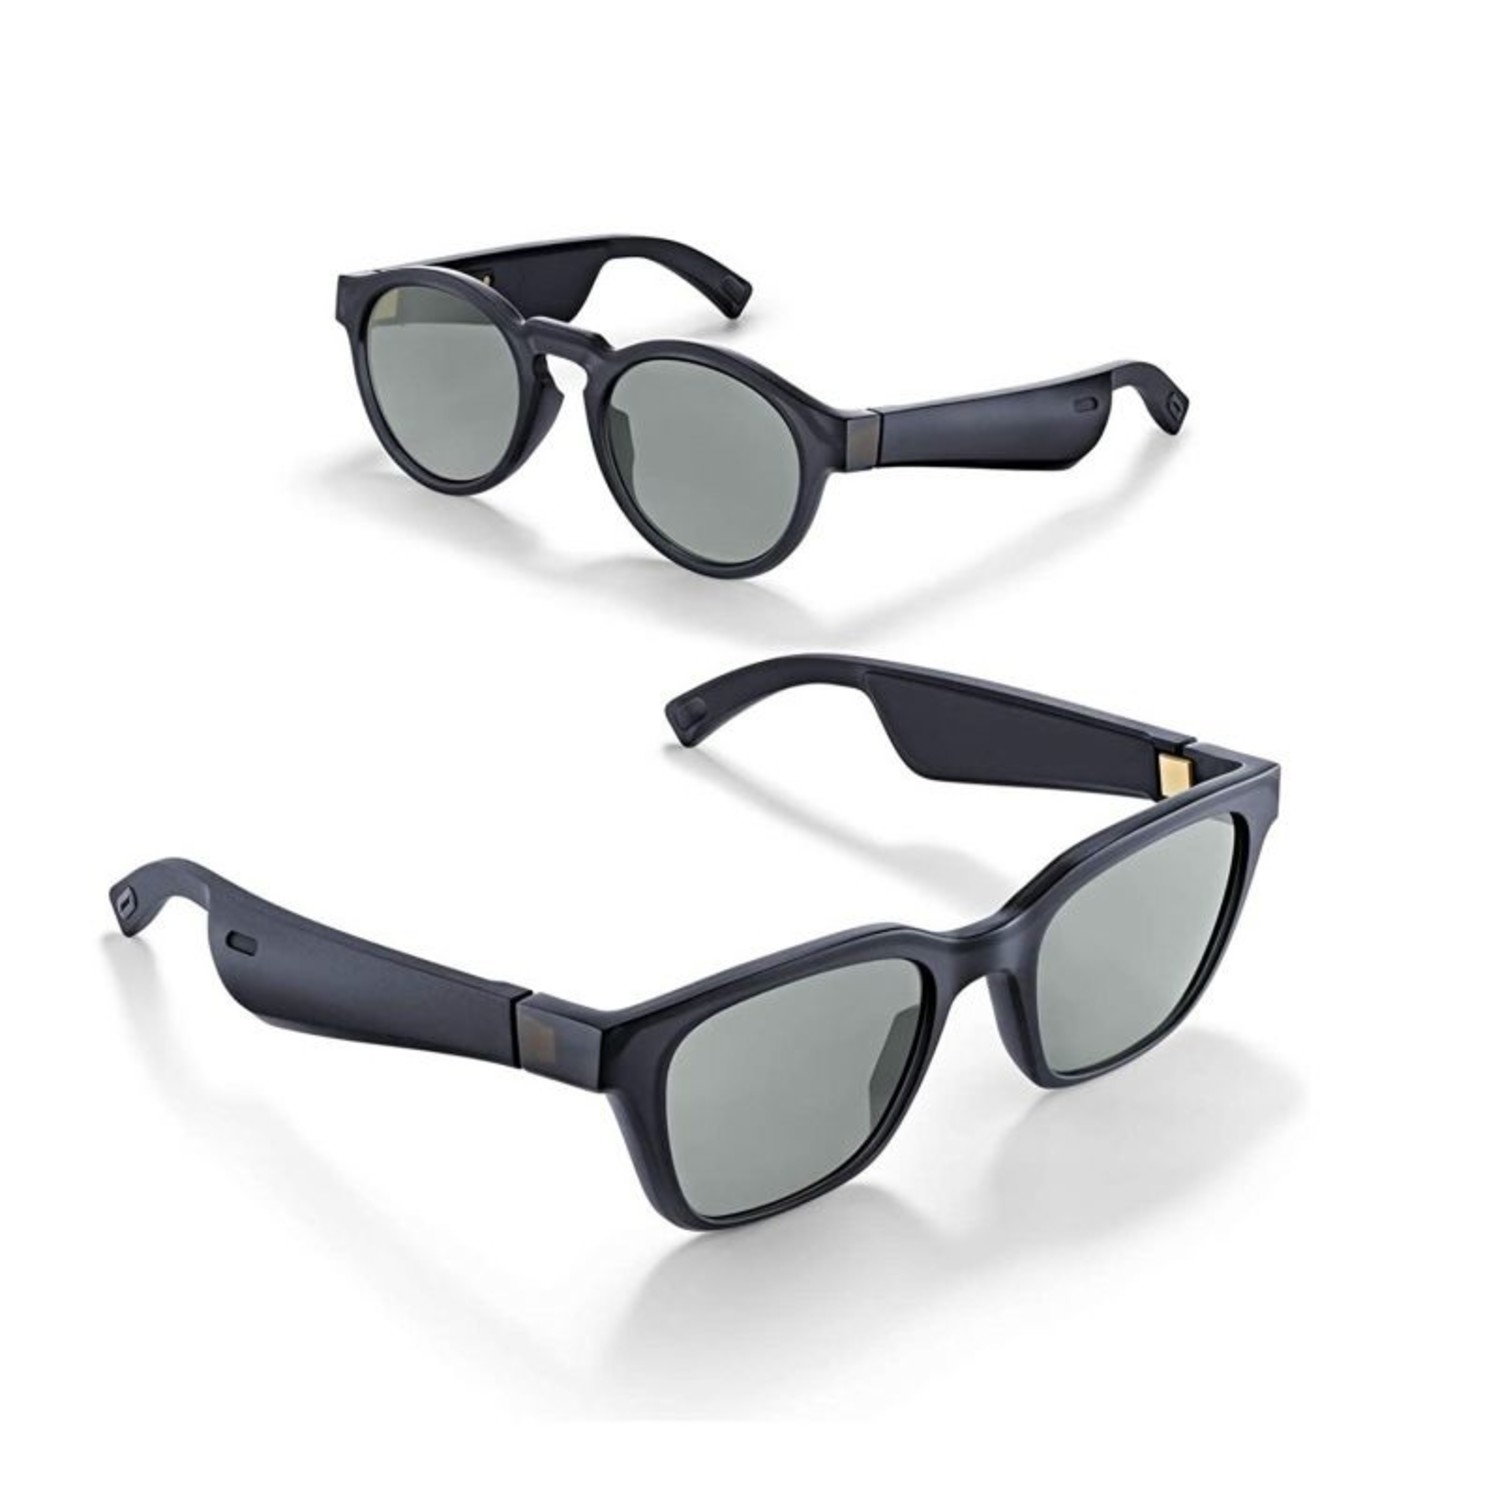 Bose Frames Alto/Rondo Audio Sunglasses with Bluetooth